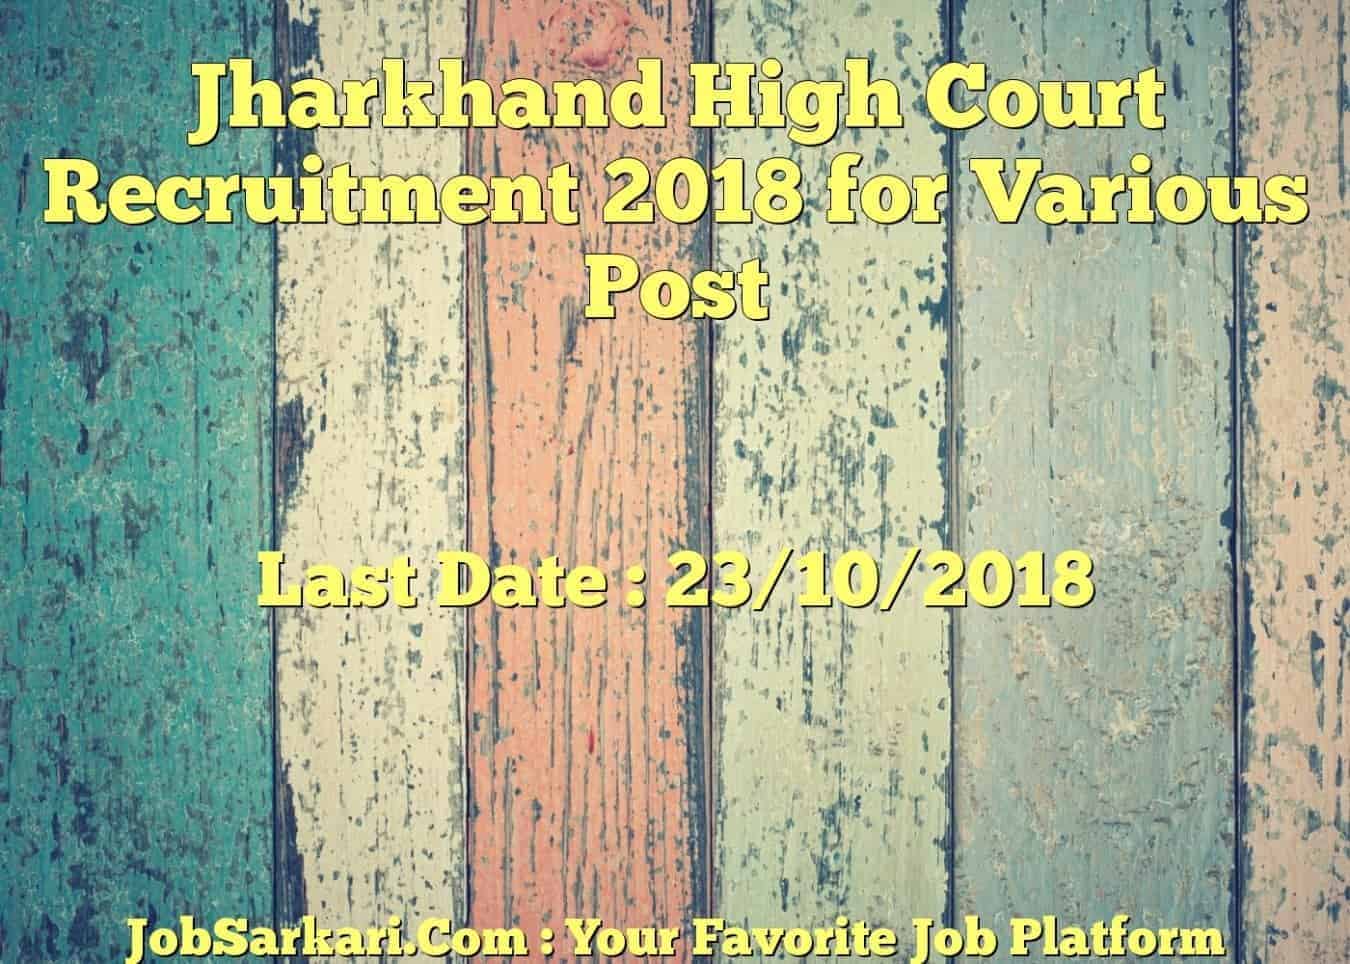 Jharkhand High Court Recruitment 2018 for Various Post